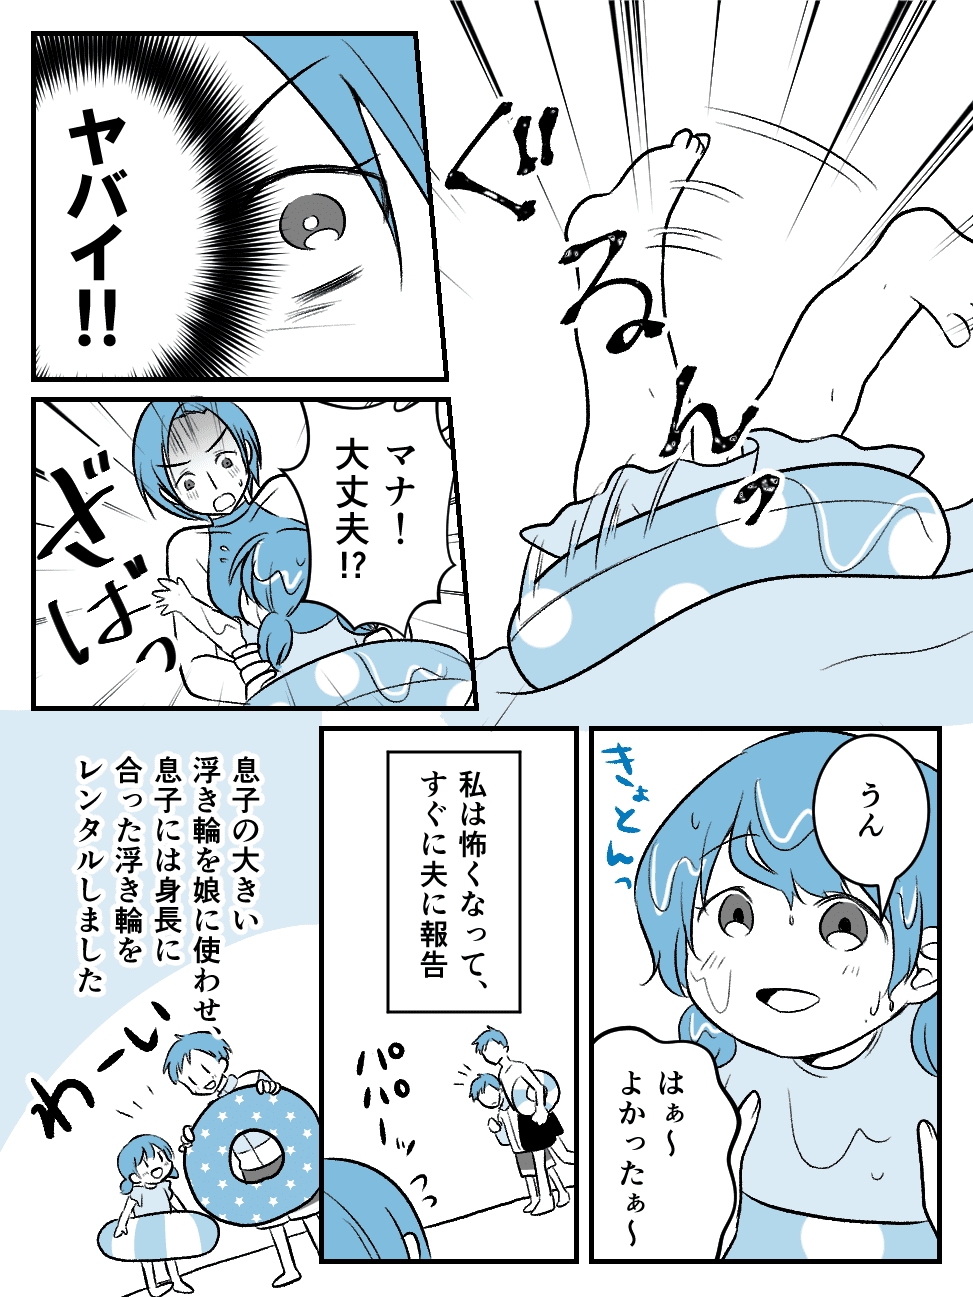 あわや水難事故_004